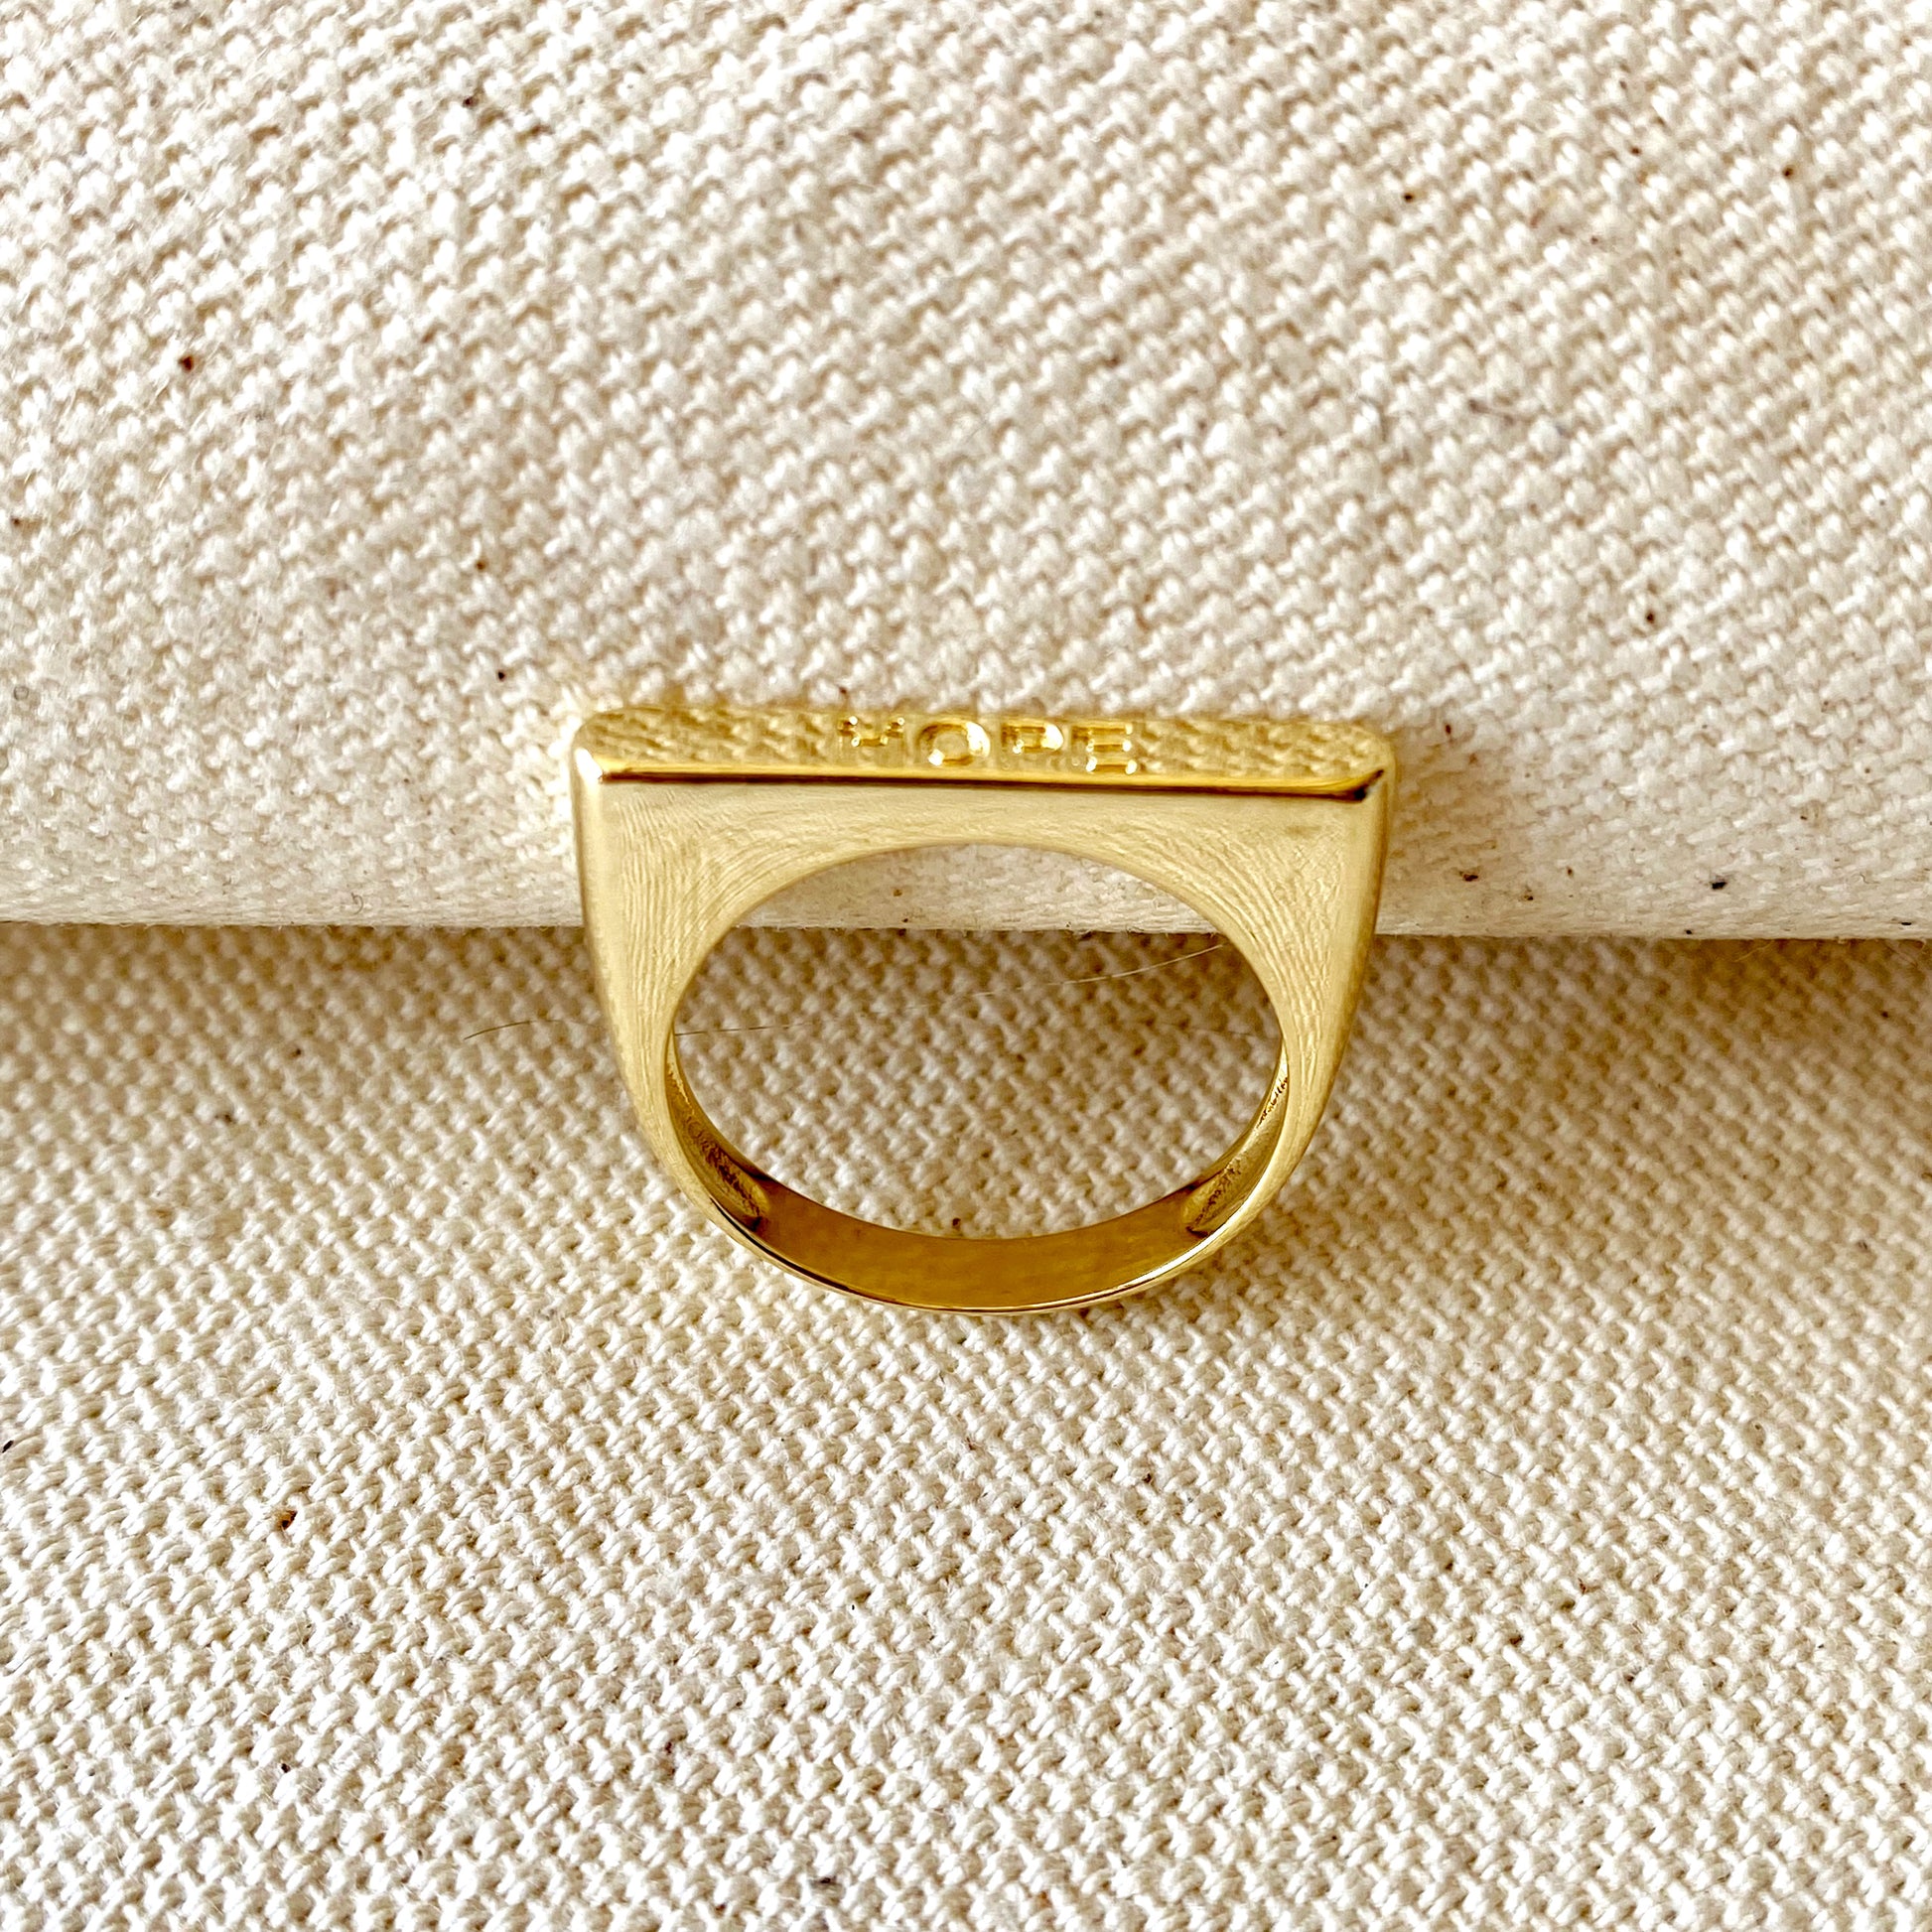 GoldFi 18k Gold Filled Hope Engraved Stackable Ring